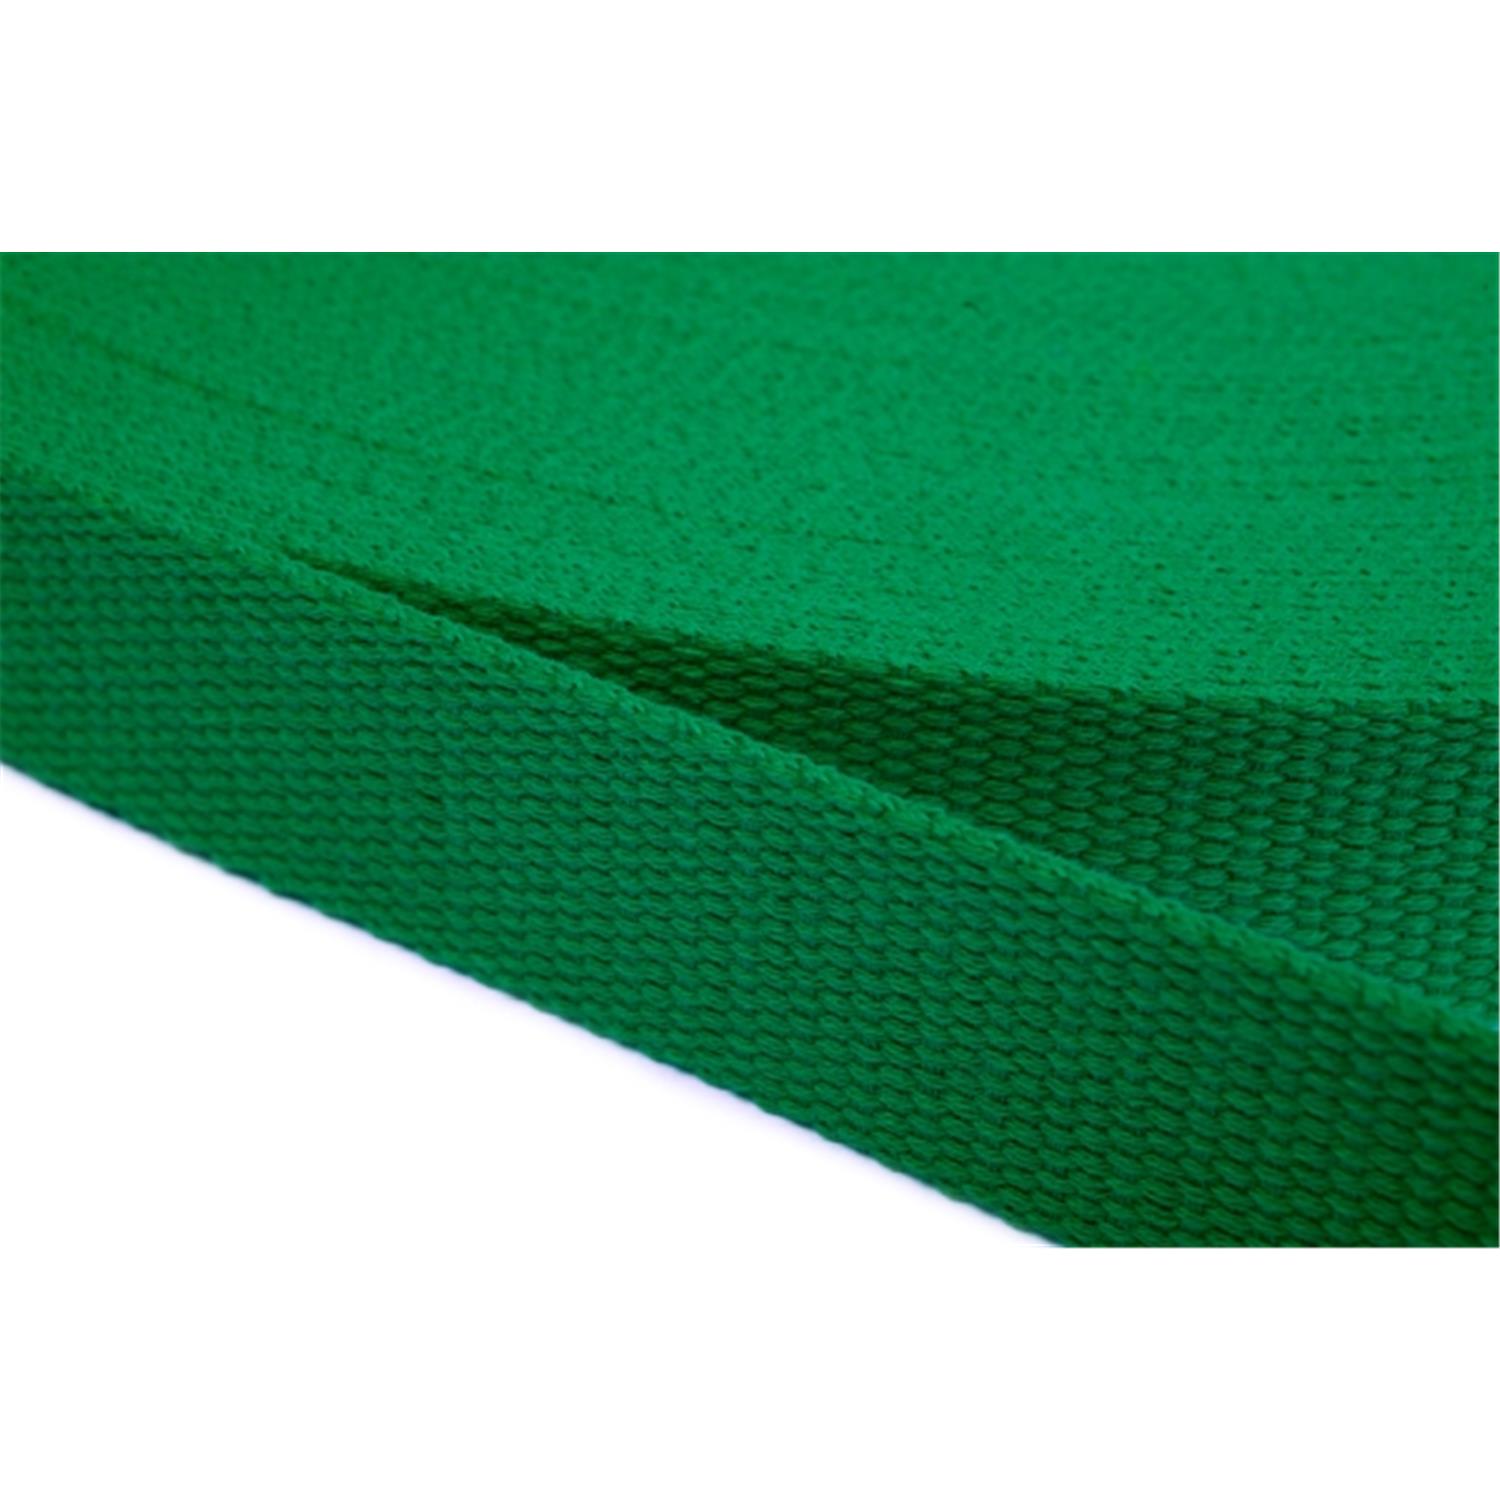 Gurtband aus Baumwolle 20mm in 20 Farben 16 - grün 6 Meter